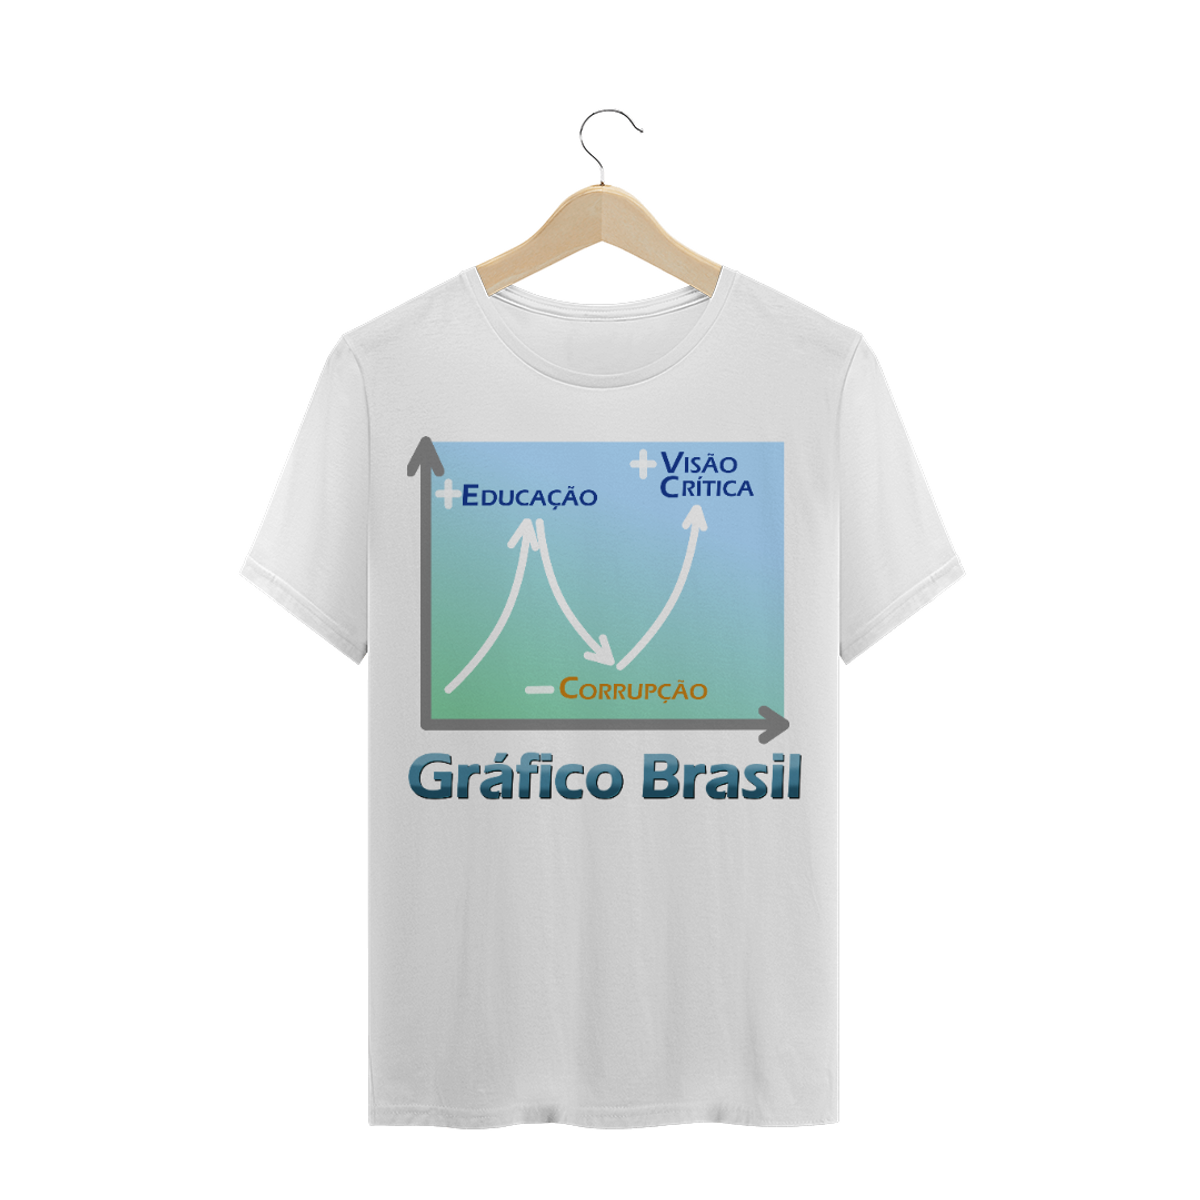 Nome do produtoCOLEÇÃO GRÁFICO BRASIL  +Educação...  -Corrupção...  +Visão Crítica